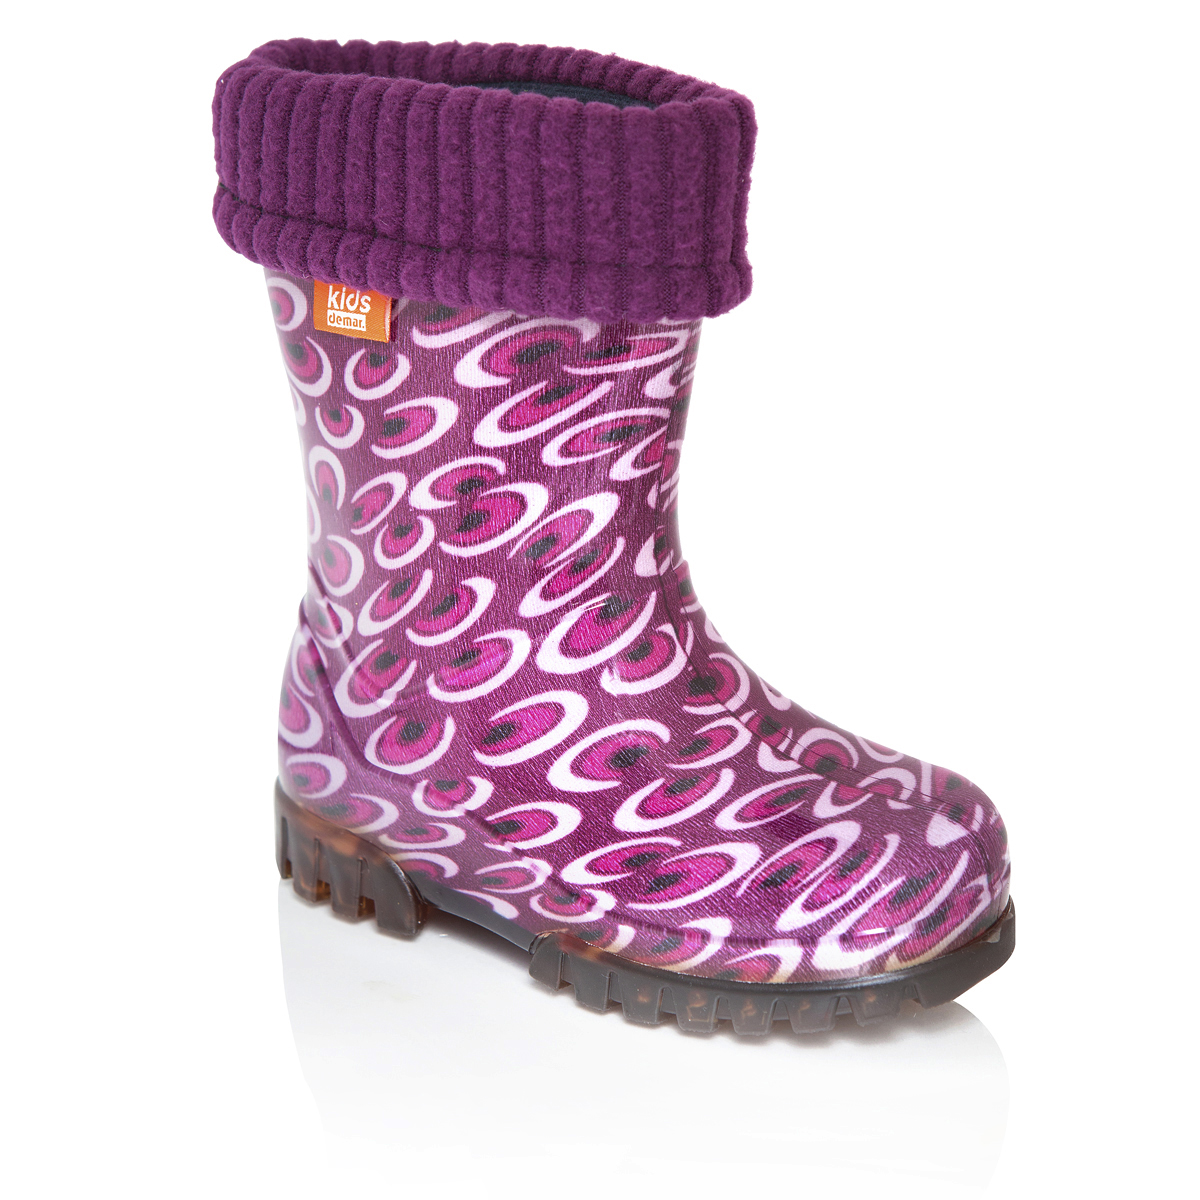 Сапоги резиновые для девочки Demar Twister Lux Print, цвет: фиолетовый. 0039. Размер 32/33